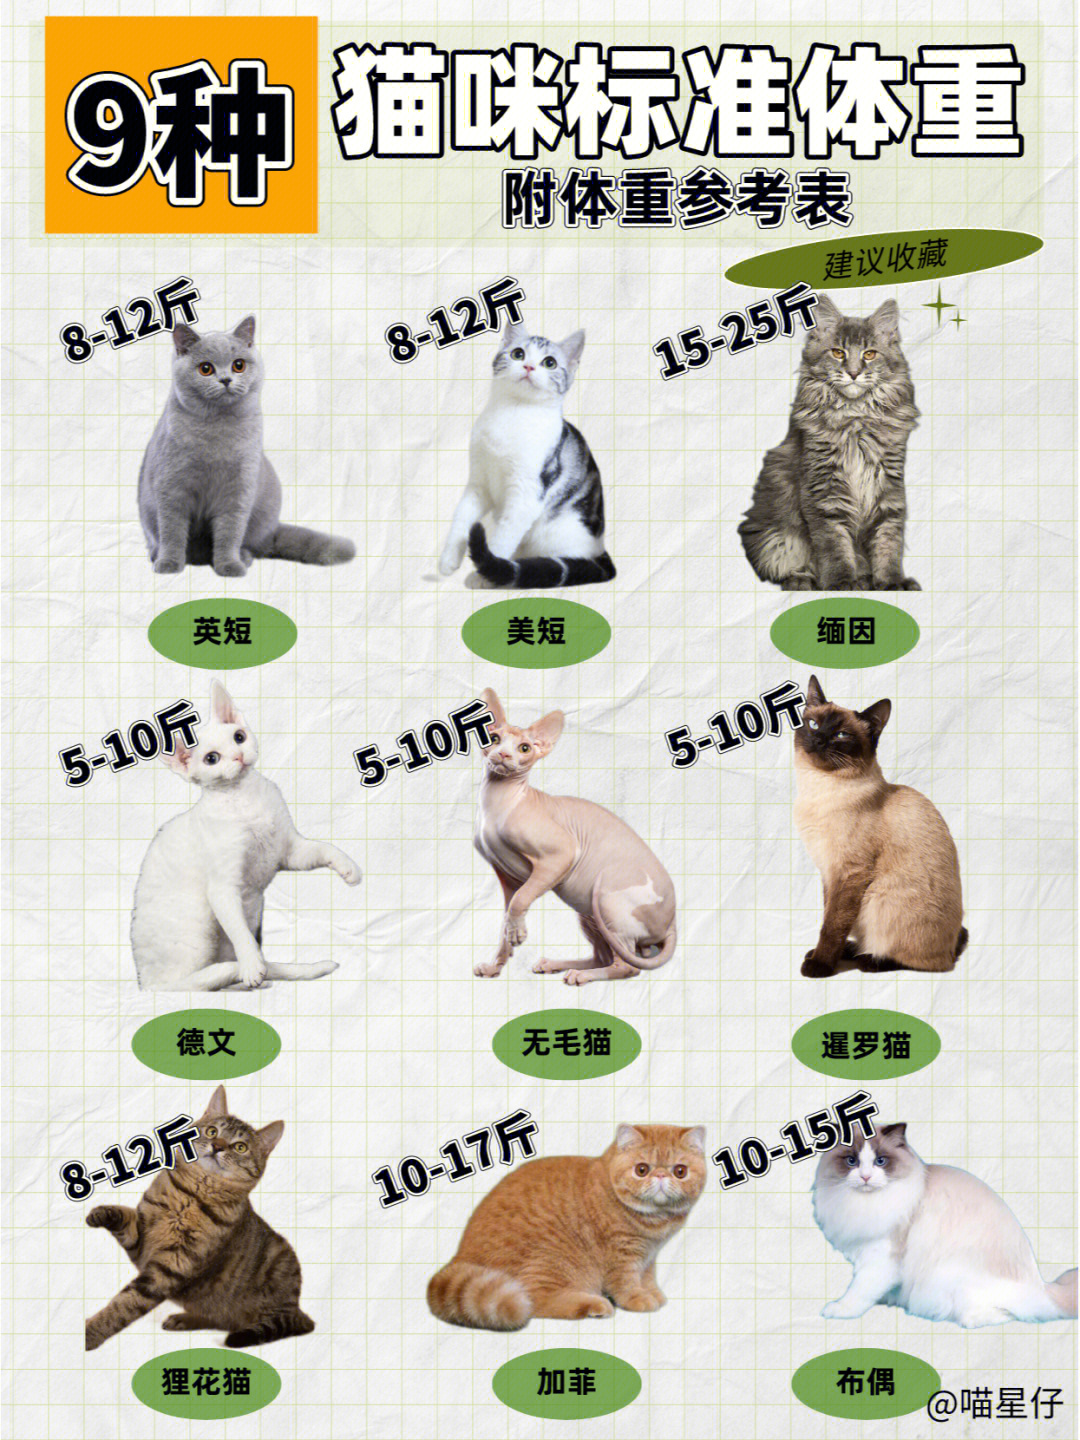 猫体型和年龄对照表图片